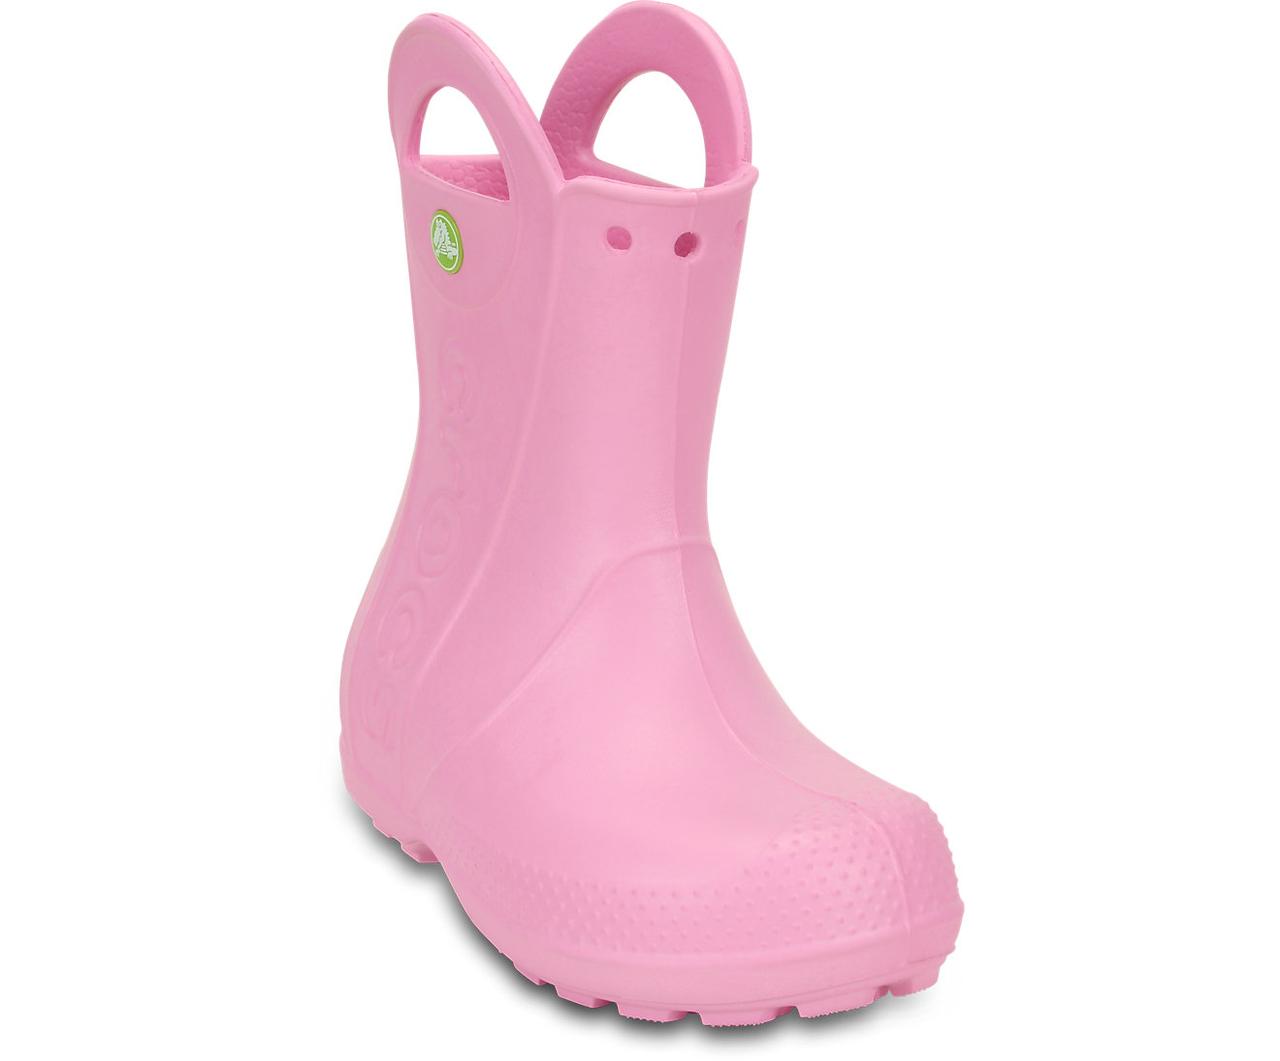 Сапоги резиновые для девочки дождевики Кроксы с ручками / Crocs Kids Handle It Rain Boot (12803), Розовые